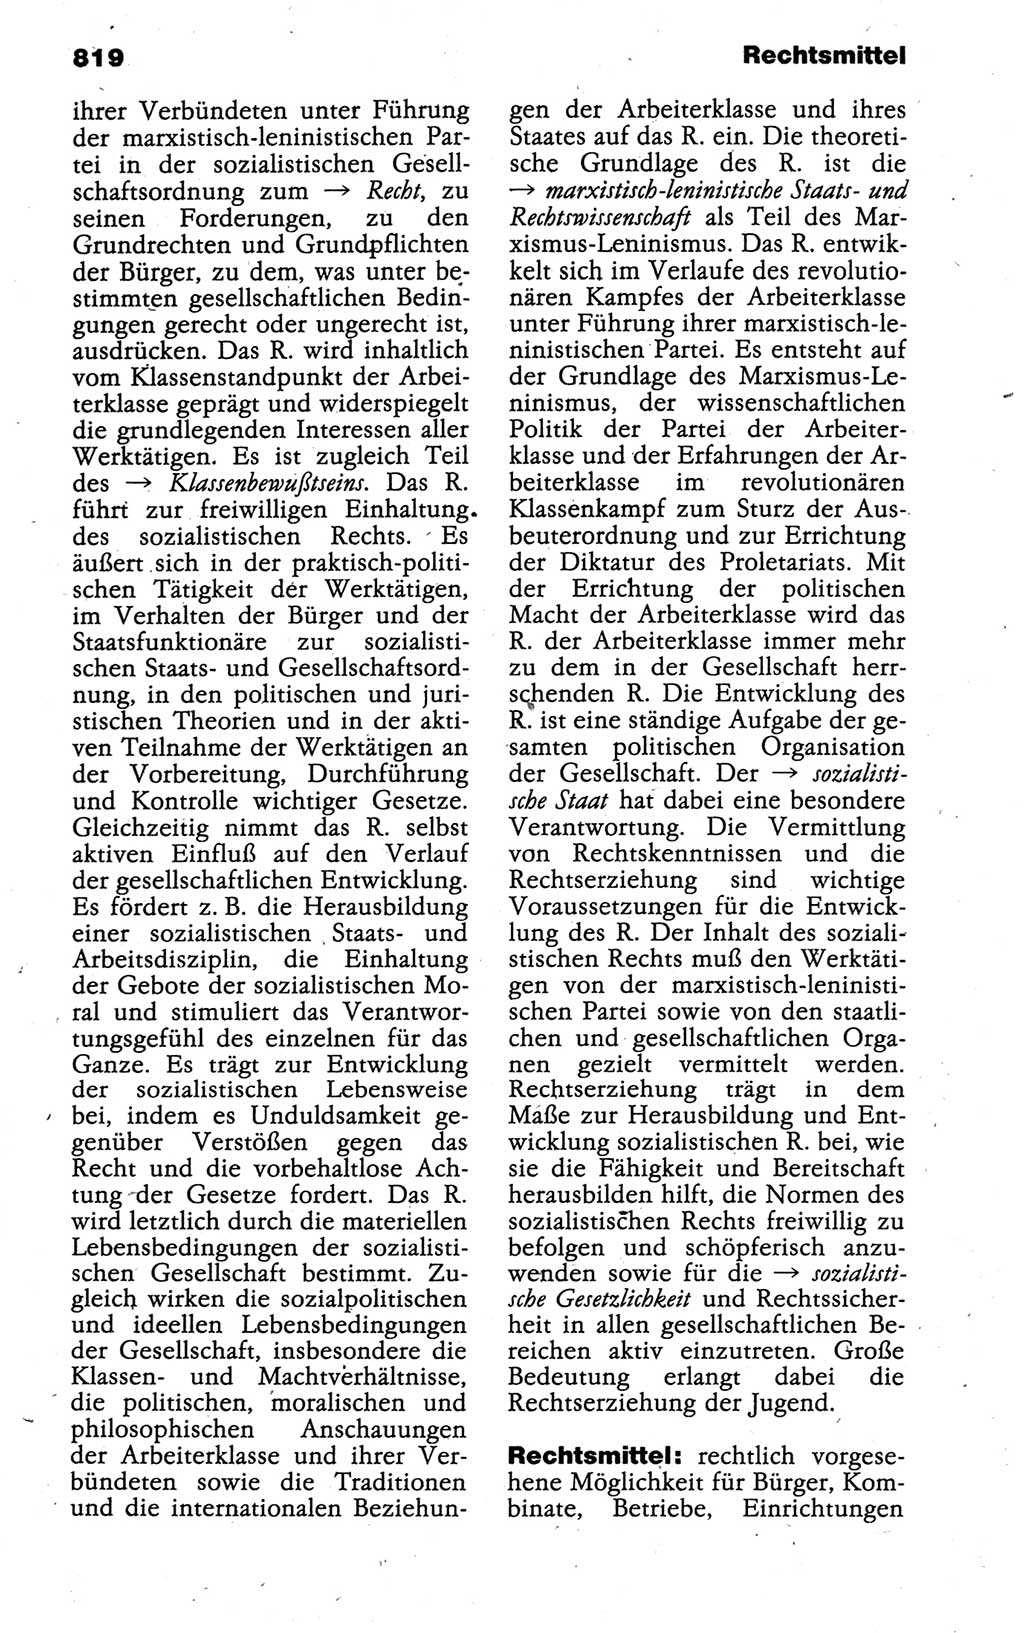 Kleines politisches Wörterbuch [Deutsche Demokratische Republik (DDR)] 1988, Seite 819 (Kl. pol. Wb. DDR 1988, S. 819)